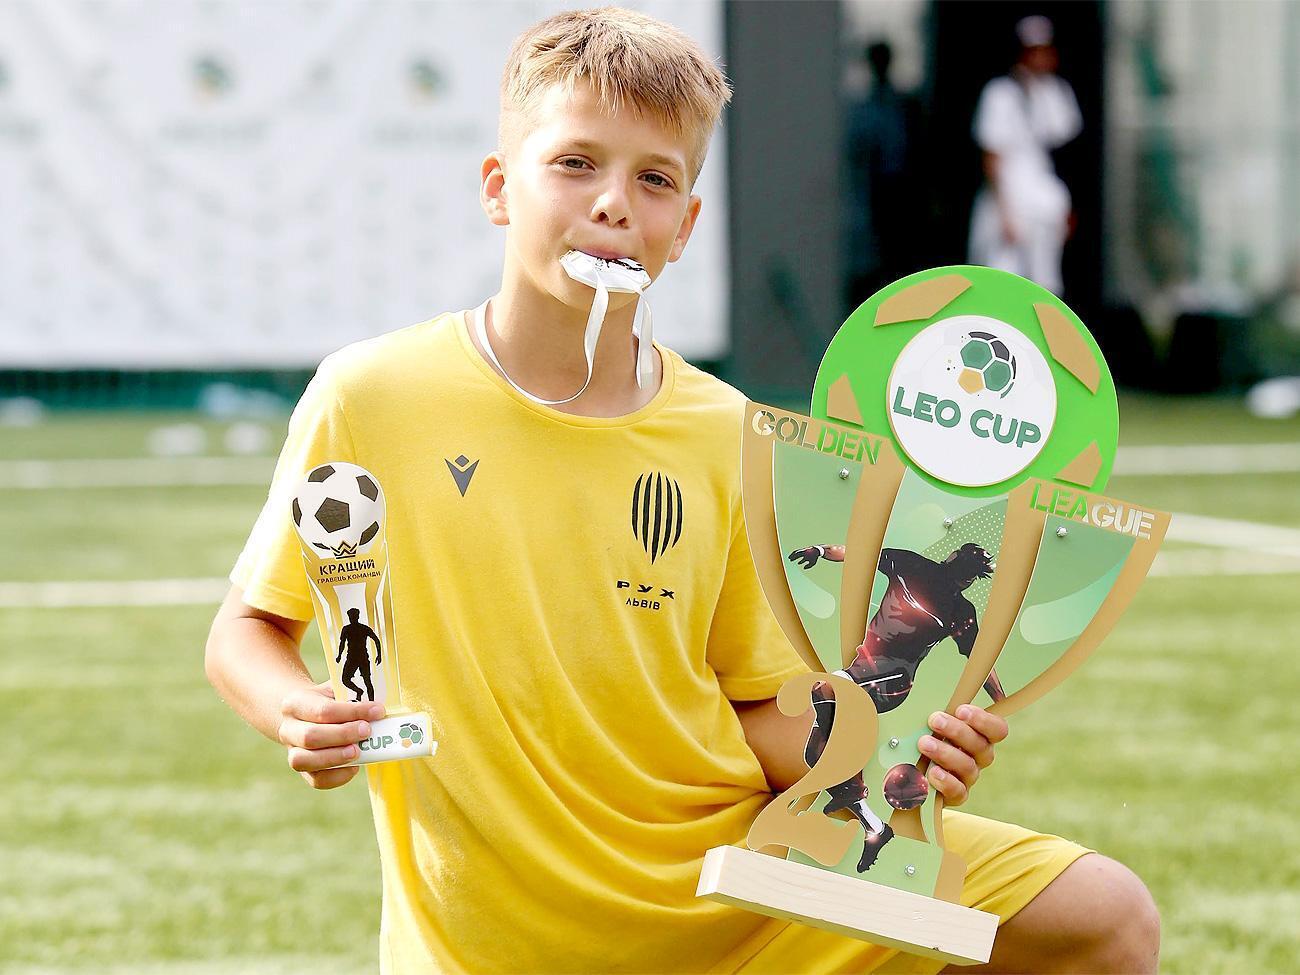 Григорий Козловский: Премия UEFA для ФК "Рух" – это фантастический триумф львовской молодежи на европейском уровне